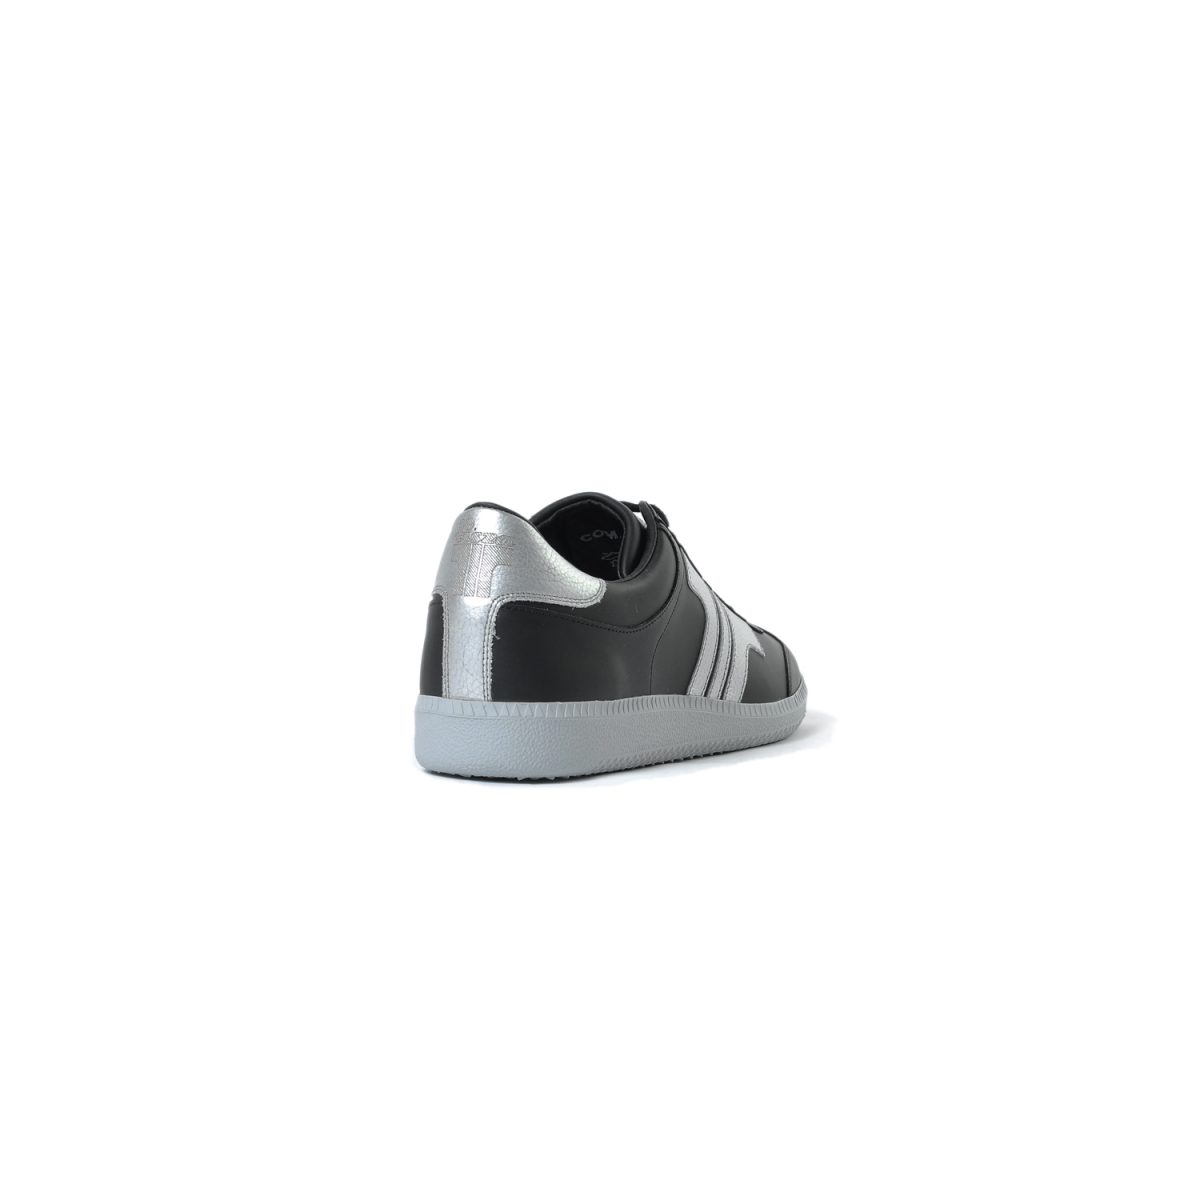 Tisza cipő - Compakt - Fekete-ezüst